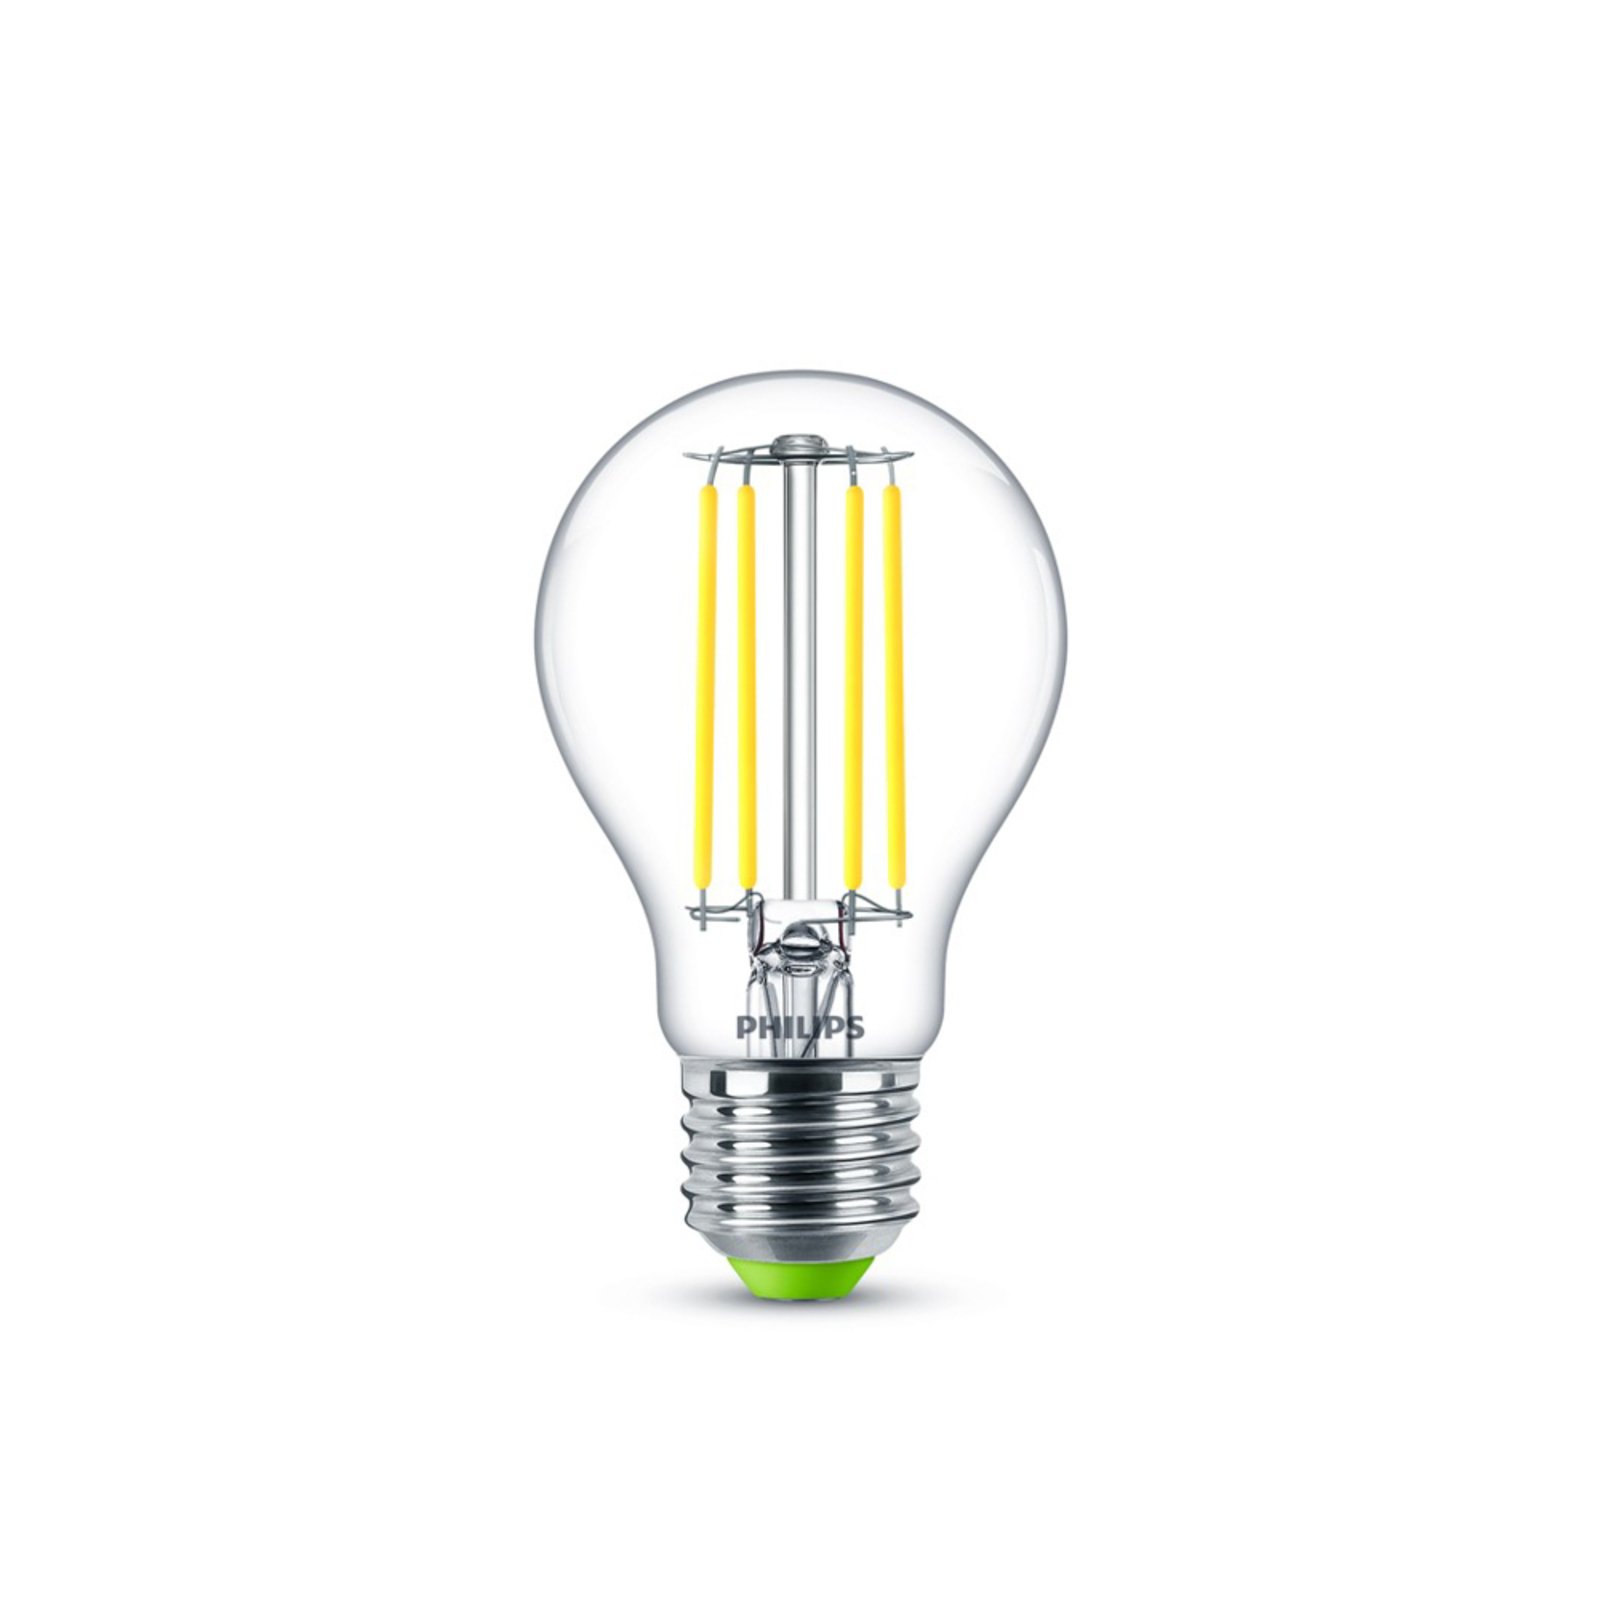 Philips LED bulb E27 2.5 W 4,000 K filament 485 lm